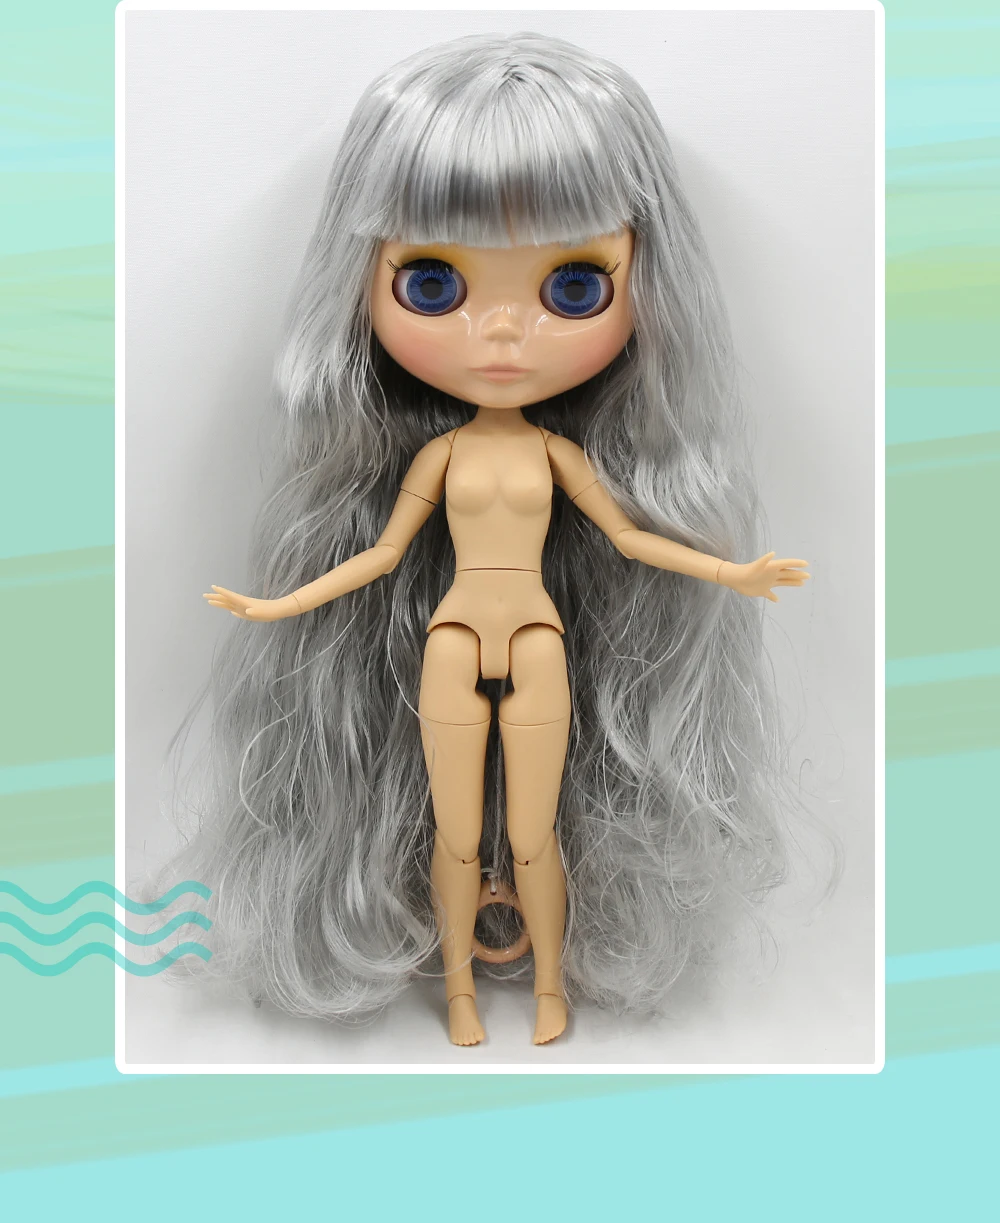 Neo Blythe-Puppe mit grauem Haar, hellbrauner Haut, glänzendem süßem Gesicht und werkseitig gegliedertem Körper 3